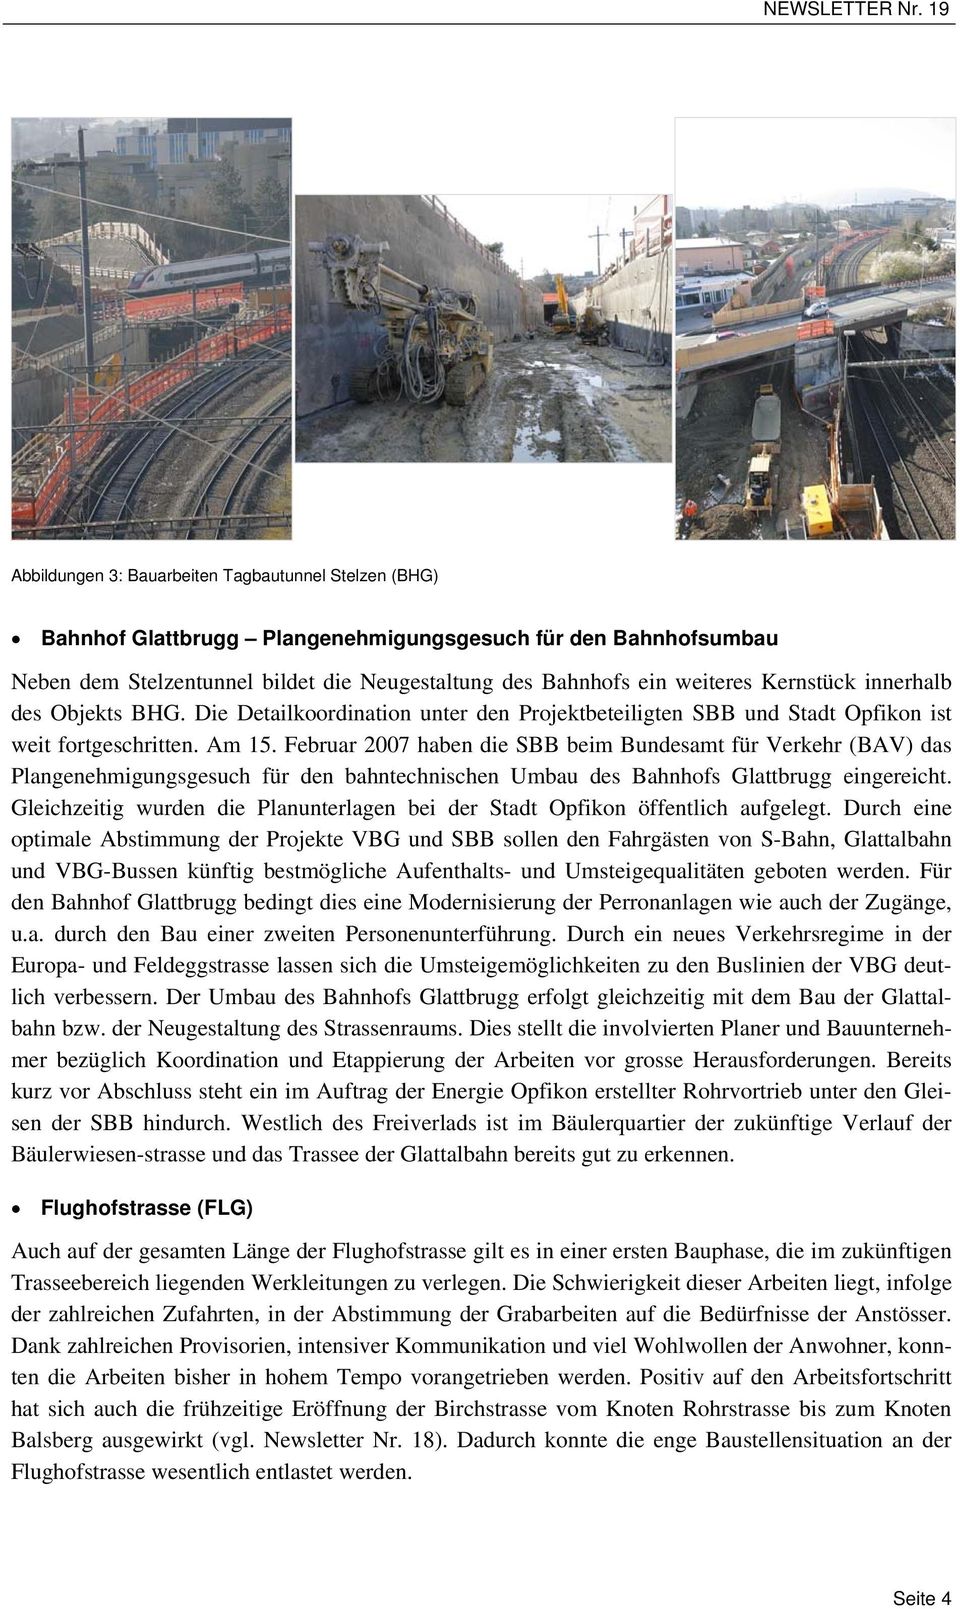 Februar 2007 haben die SBB beim Bundesamt für Verkehr (BAV) das Plangenehmigungsgesuch für den bahntechnischen Umbau des Bahnhofs Glattbrugg eingereicht.